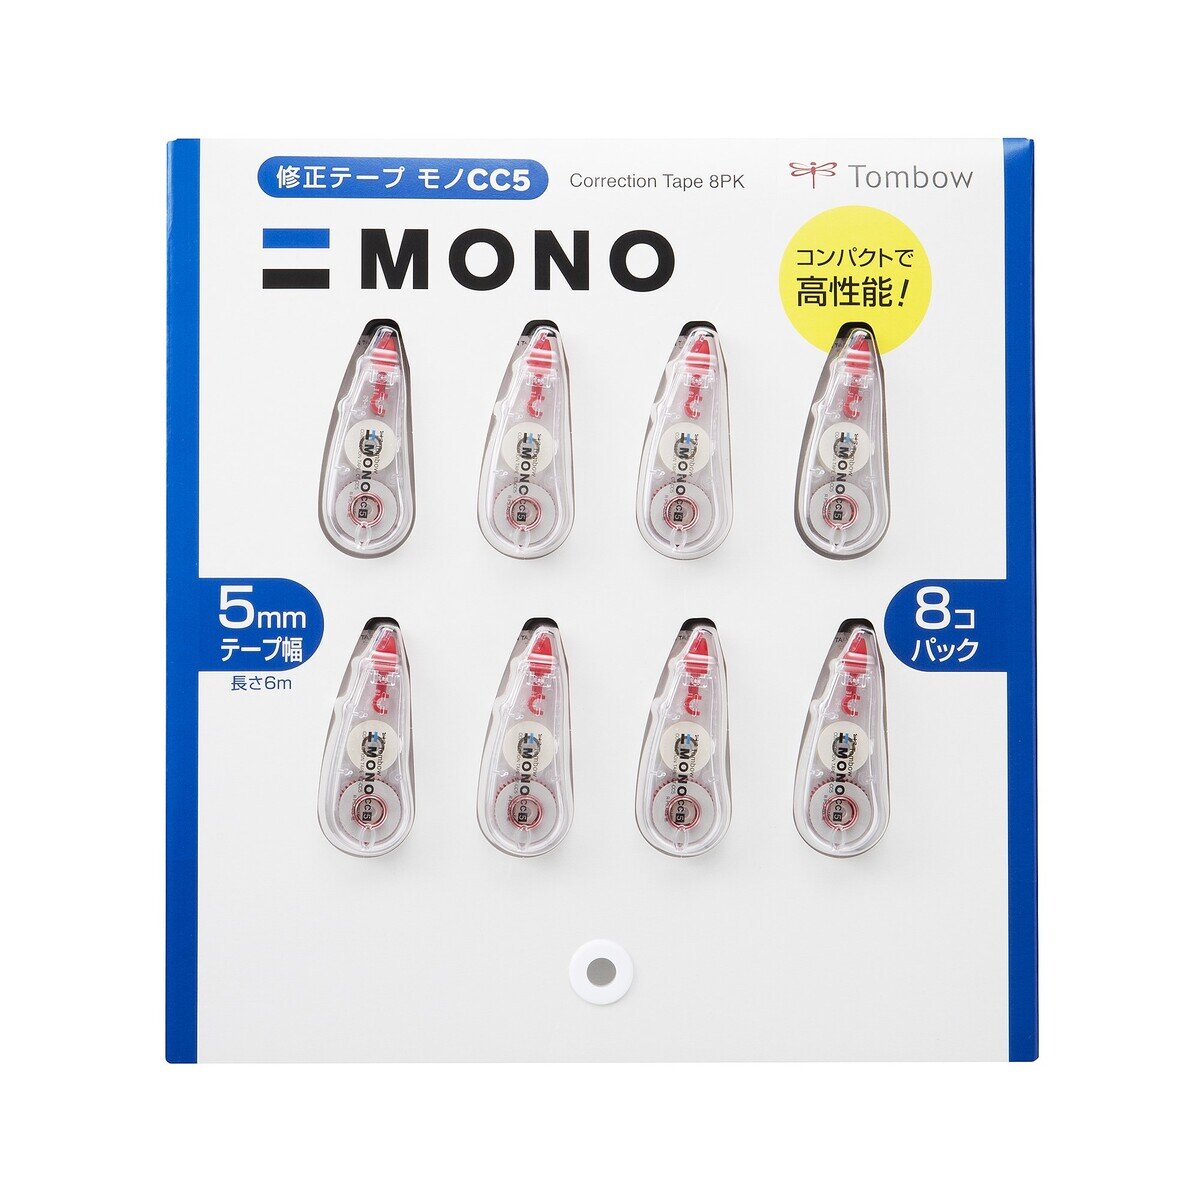 トンボ鉛筆 修正テープ MONO CC5 5mm x 6m 8個セット Costco Japan